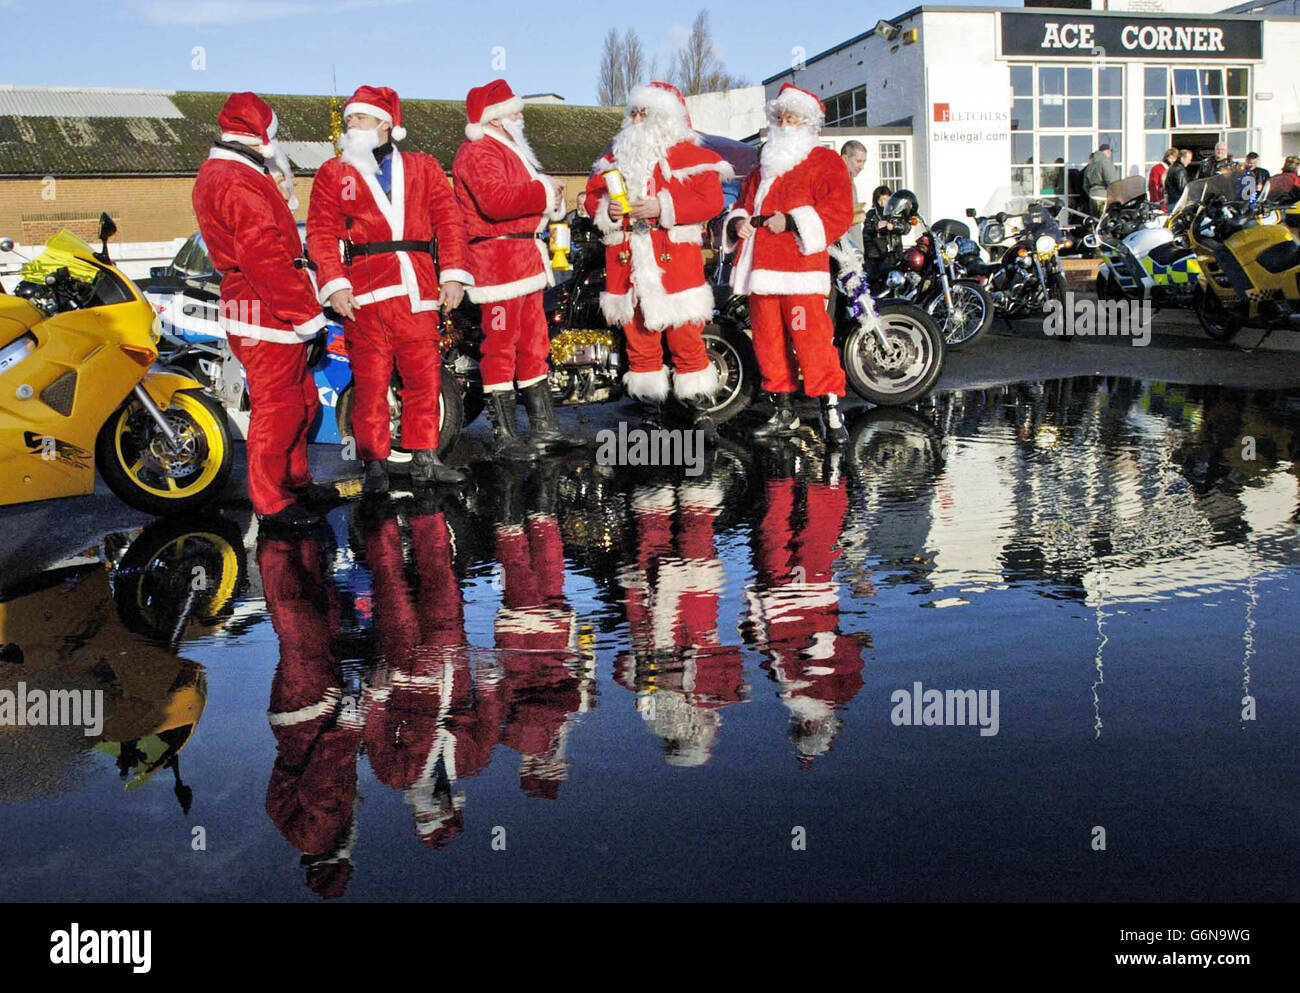 Fünf von über hundert Motorradfahrern, die in Santa Claus-Kostümen gekleidet sind, versammeln sich im Ace Cafe, abseits der North Circular Road, Brent, im Norden Londons, um Kindern Weihnachtsgeschenke im Central Middlesex Hospital, St. Mary's Hospital und St. Thomas' Hospital zu überreichen. Stockfoto